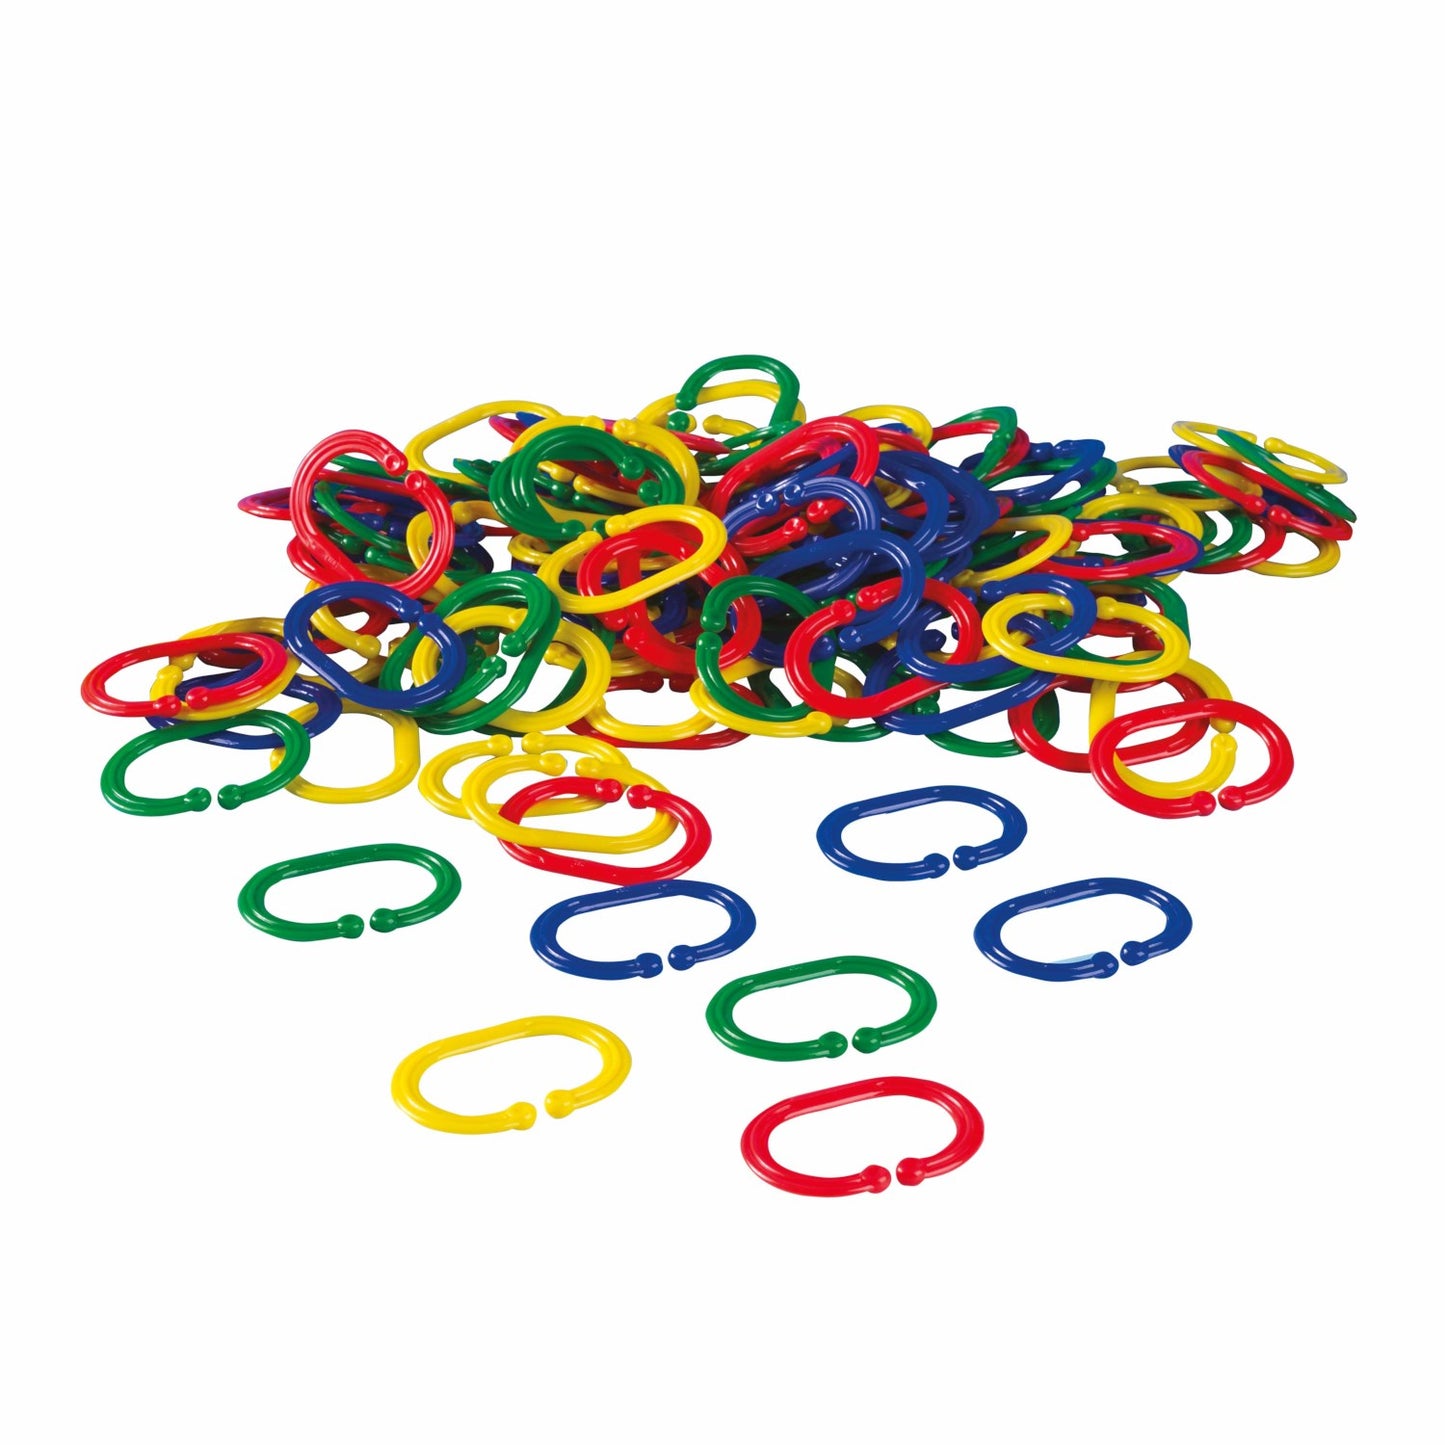 Educo Chain Links 彩色扣環遊戲